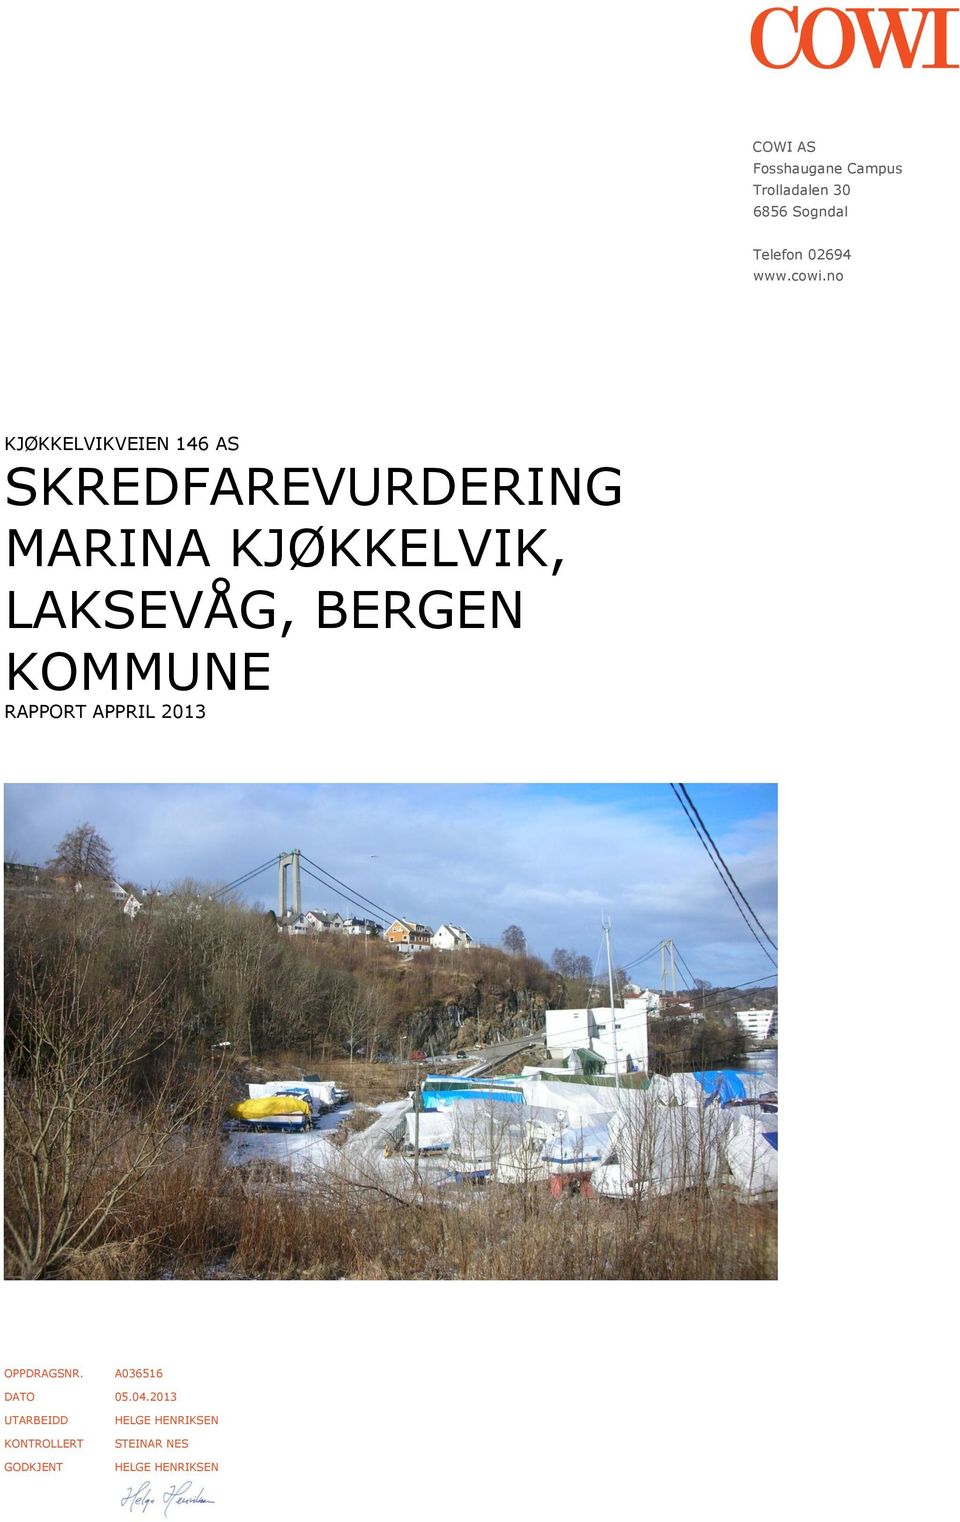 LAKSEVÅG, BERGEN KOMMUNE RAPPORT APPRIL 2013 OPPDRAGSNR. A036516 DATO 05.